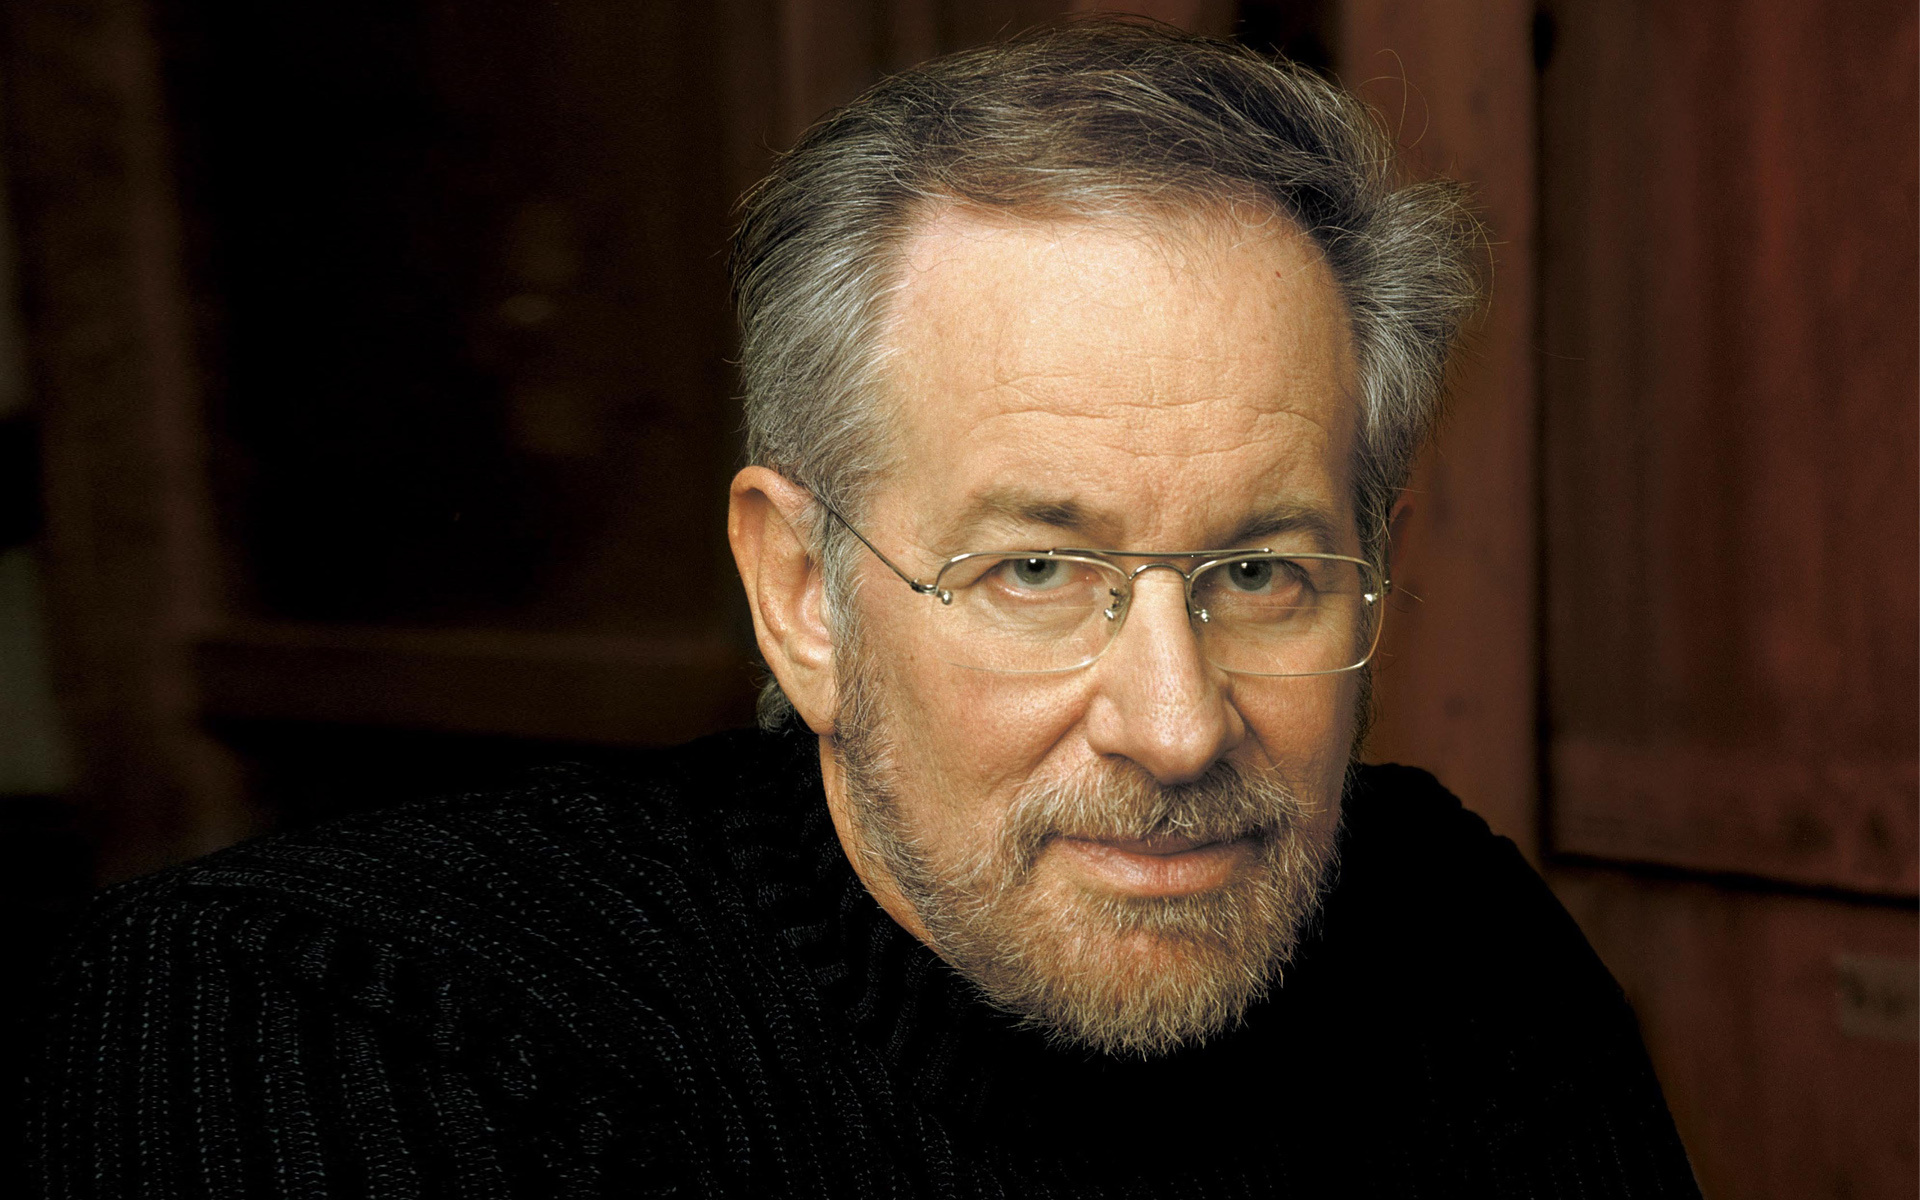 Steven Spielberg's face, Filmmaker persona, Screenwriting genius, Film director's journey, 1920x1200 HD Desktop